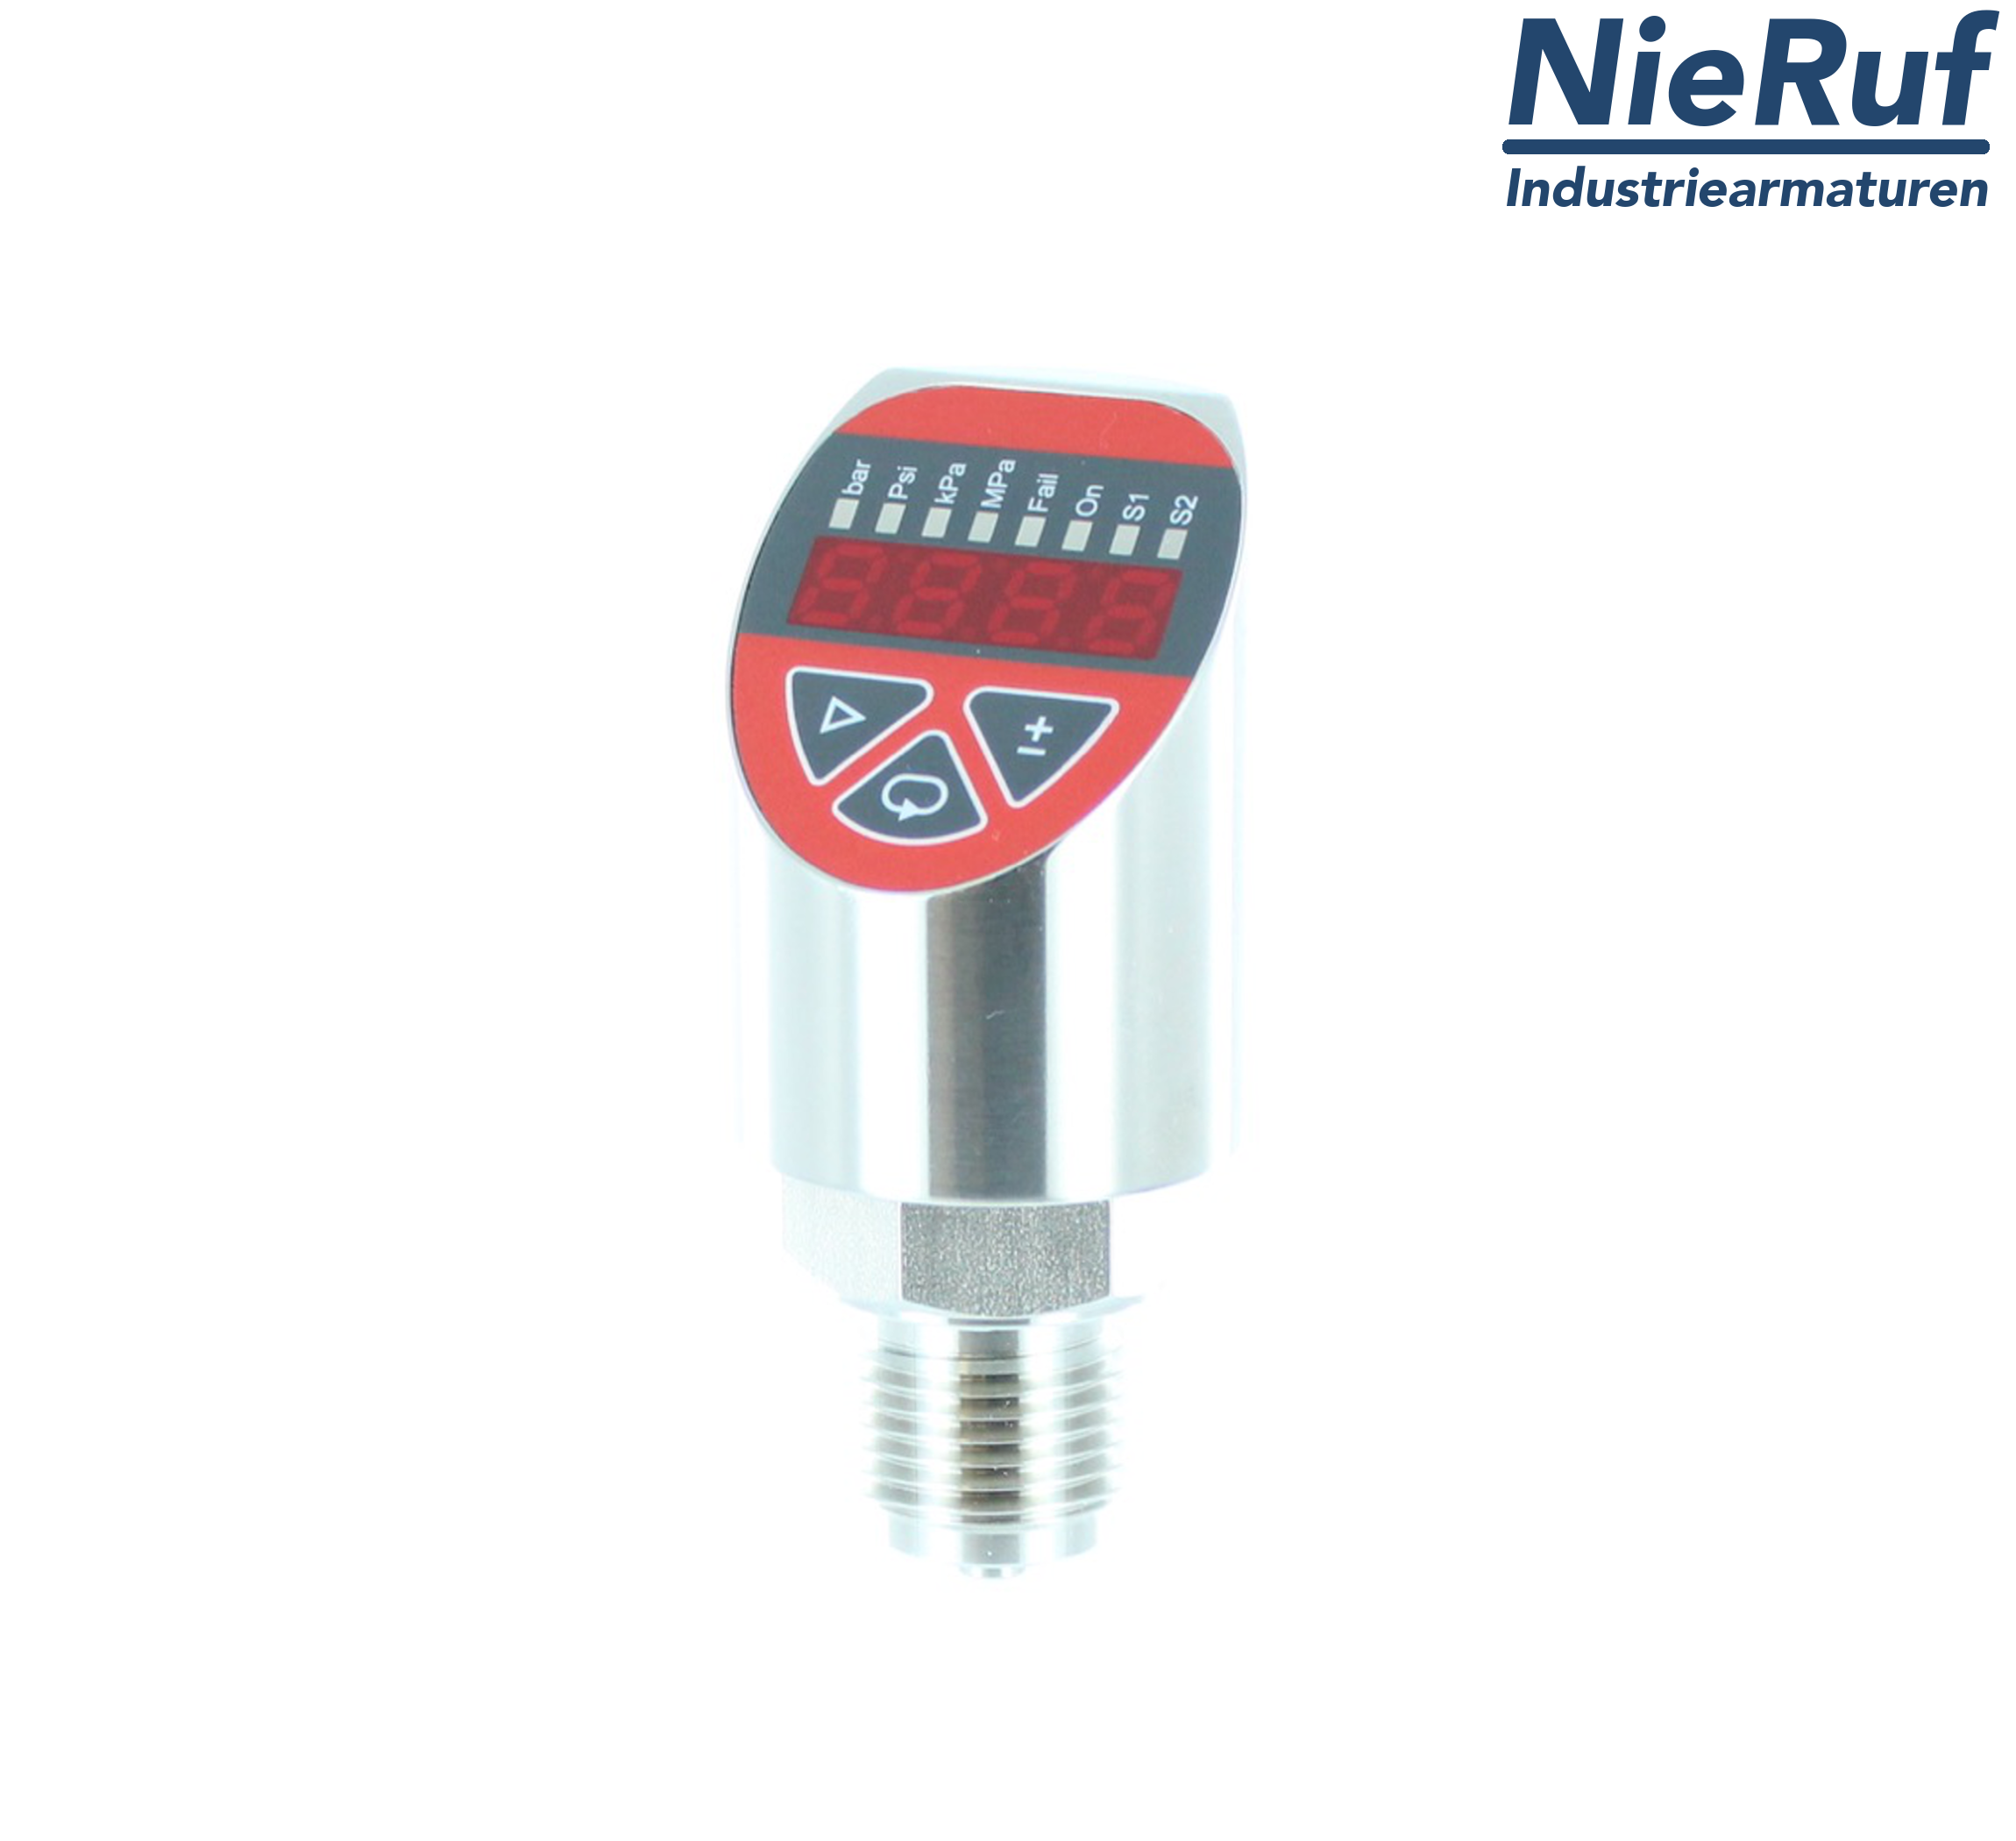 digital pressure sensor G 1/2" B IB 4-wire: 1xPNP, 1x4 - 20mA, Desina FPM 0,0 - 600,0 bar